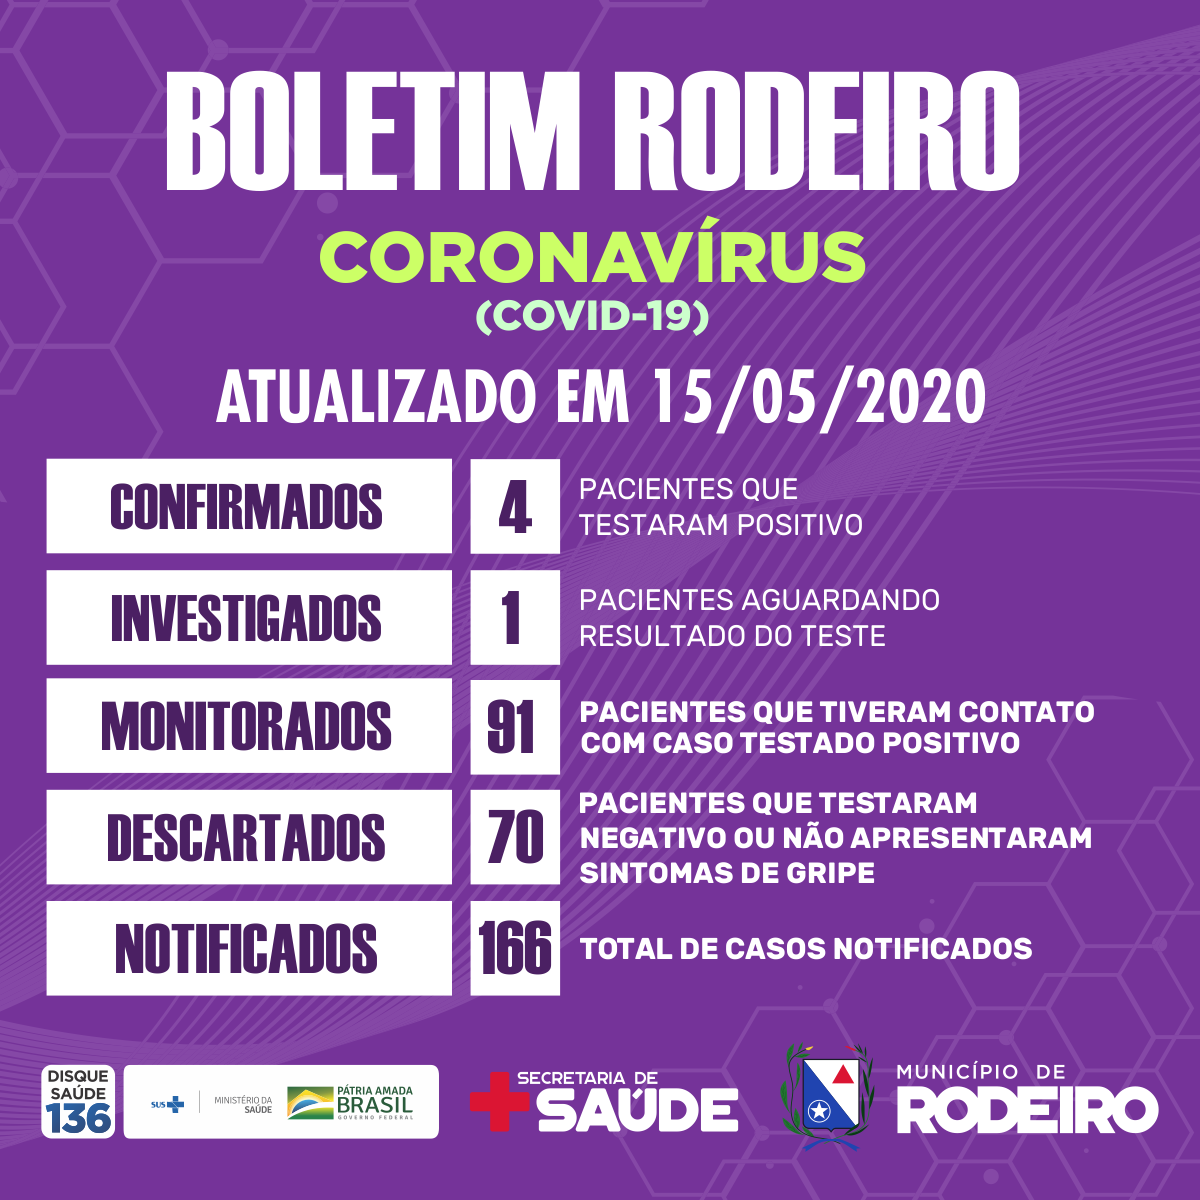 Boletim epidemiológico do Município de Rodeiro, atualização sobre coronavírus em 15/05/2020